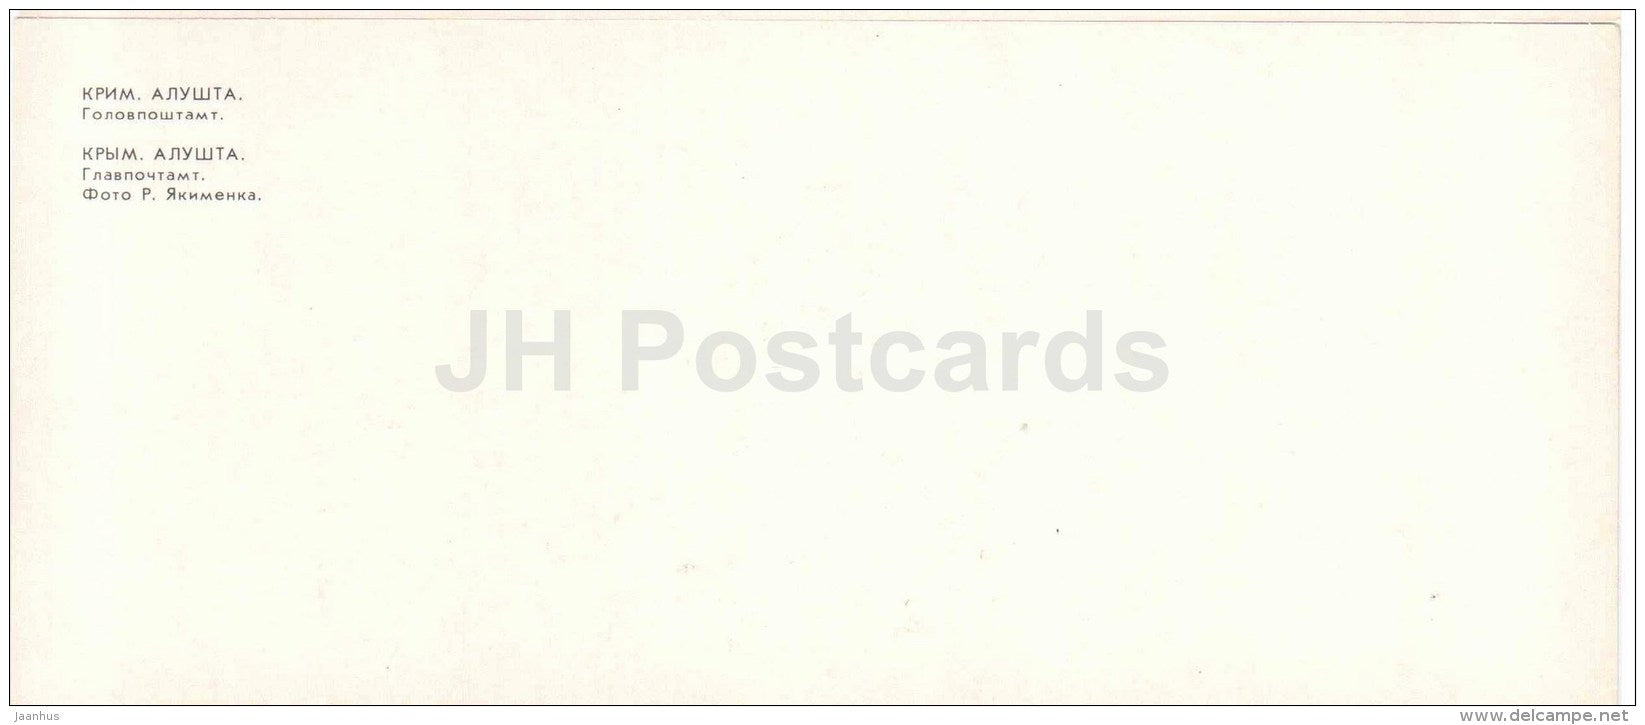 main post office - Alushta - Crimea - 1981 - Ukraine USSR - unused - JH Postcards